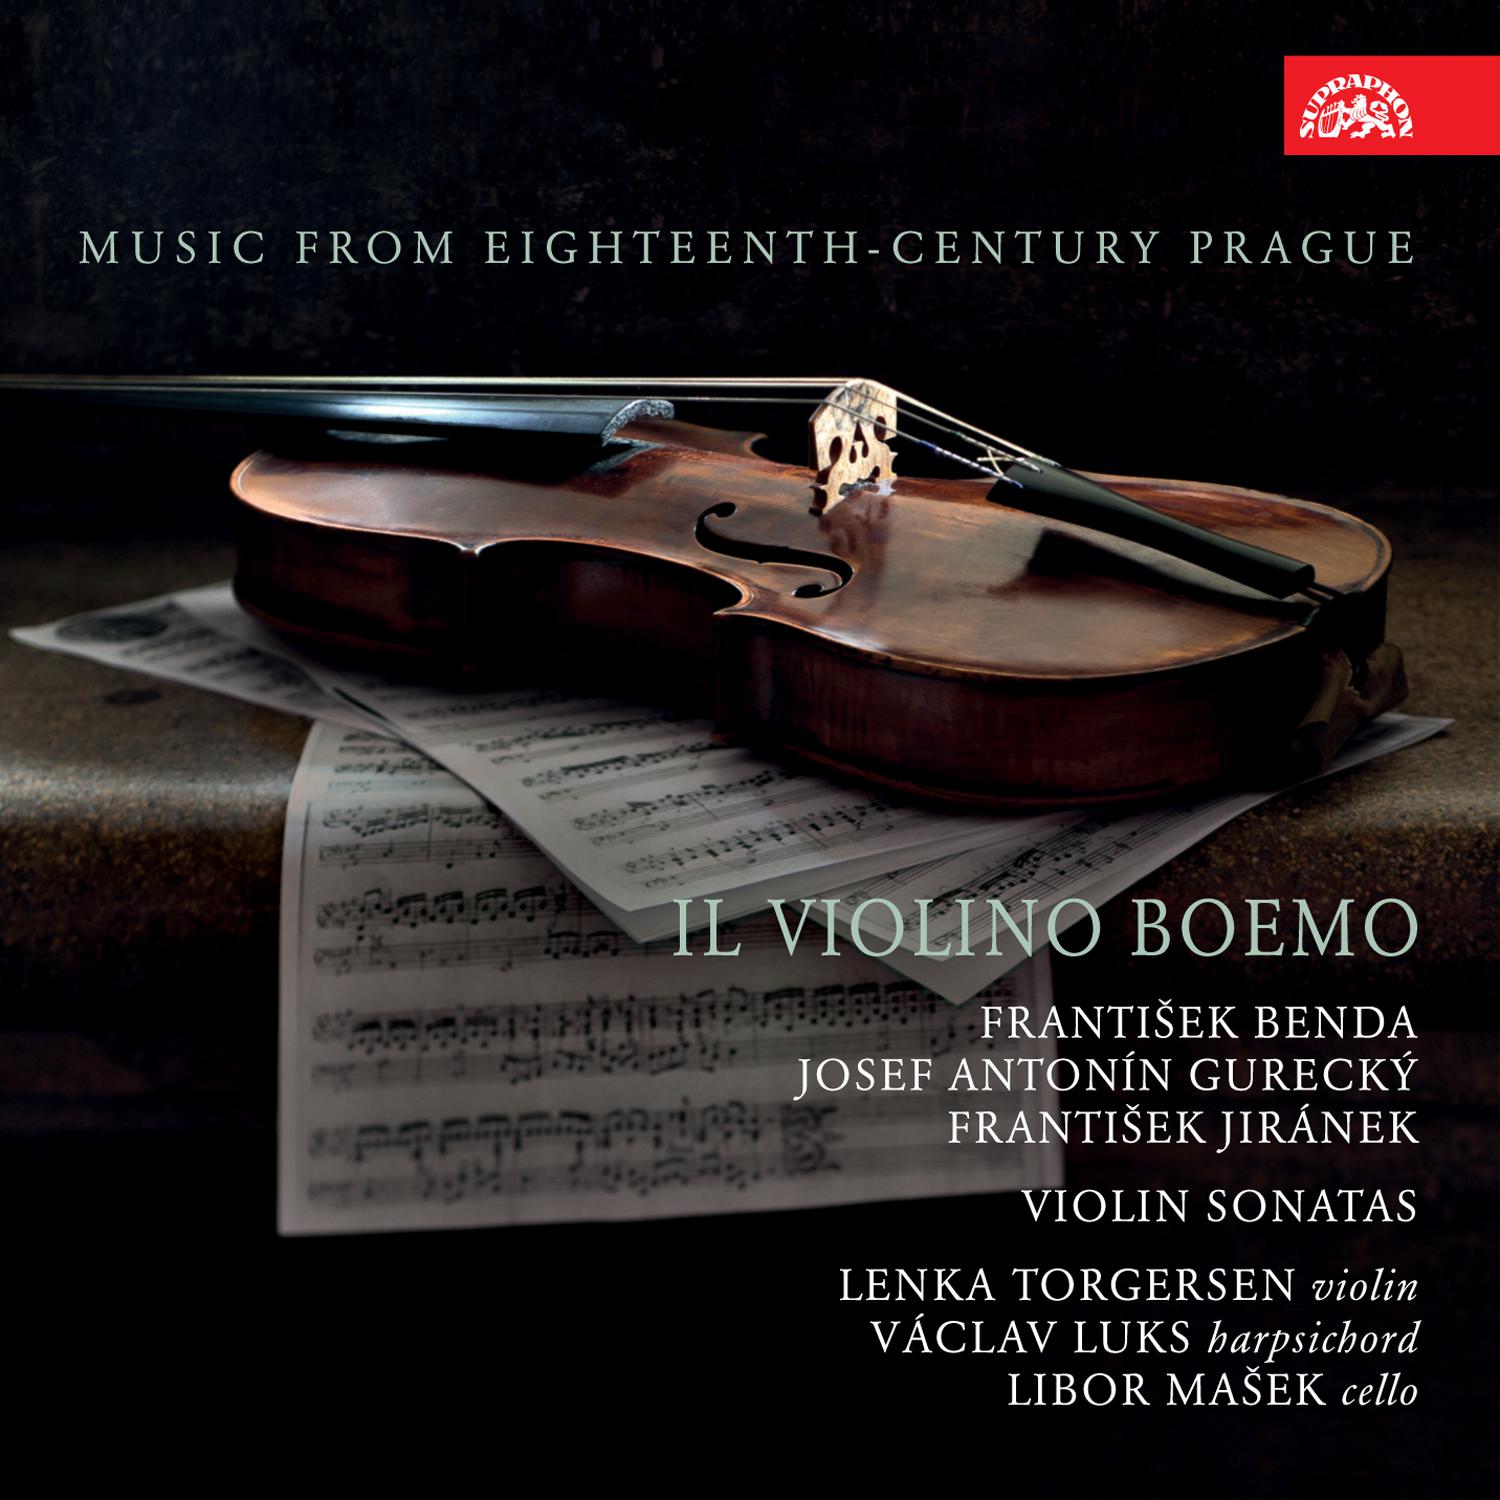 Lenka Torgersen - Violin Sonata in D Major:IV. Vivace